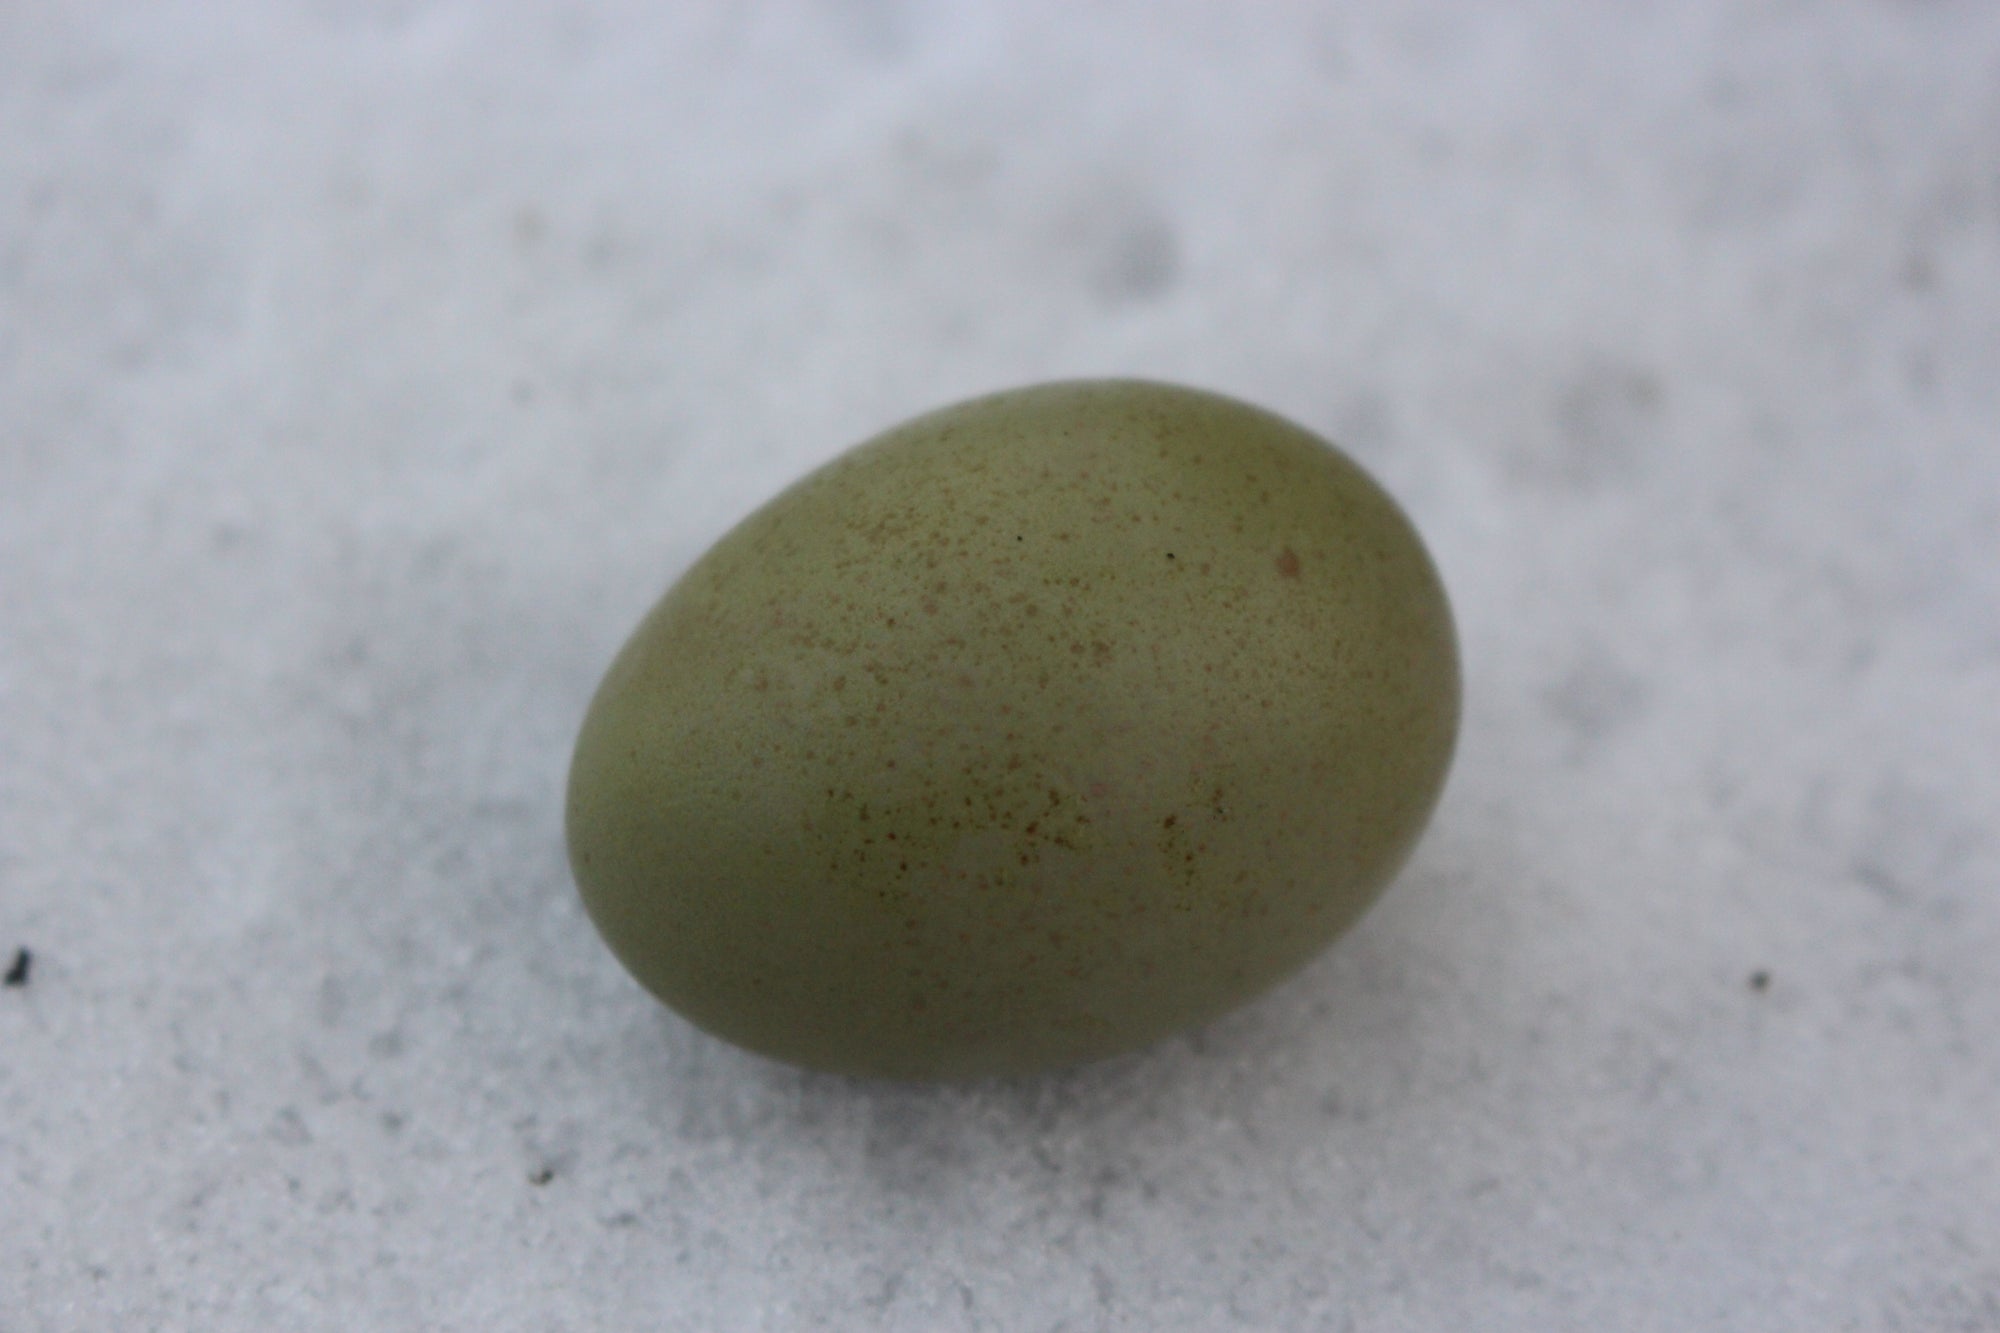 Olive Egger Chicks "Dark Green Egg Layer"